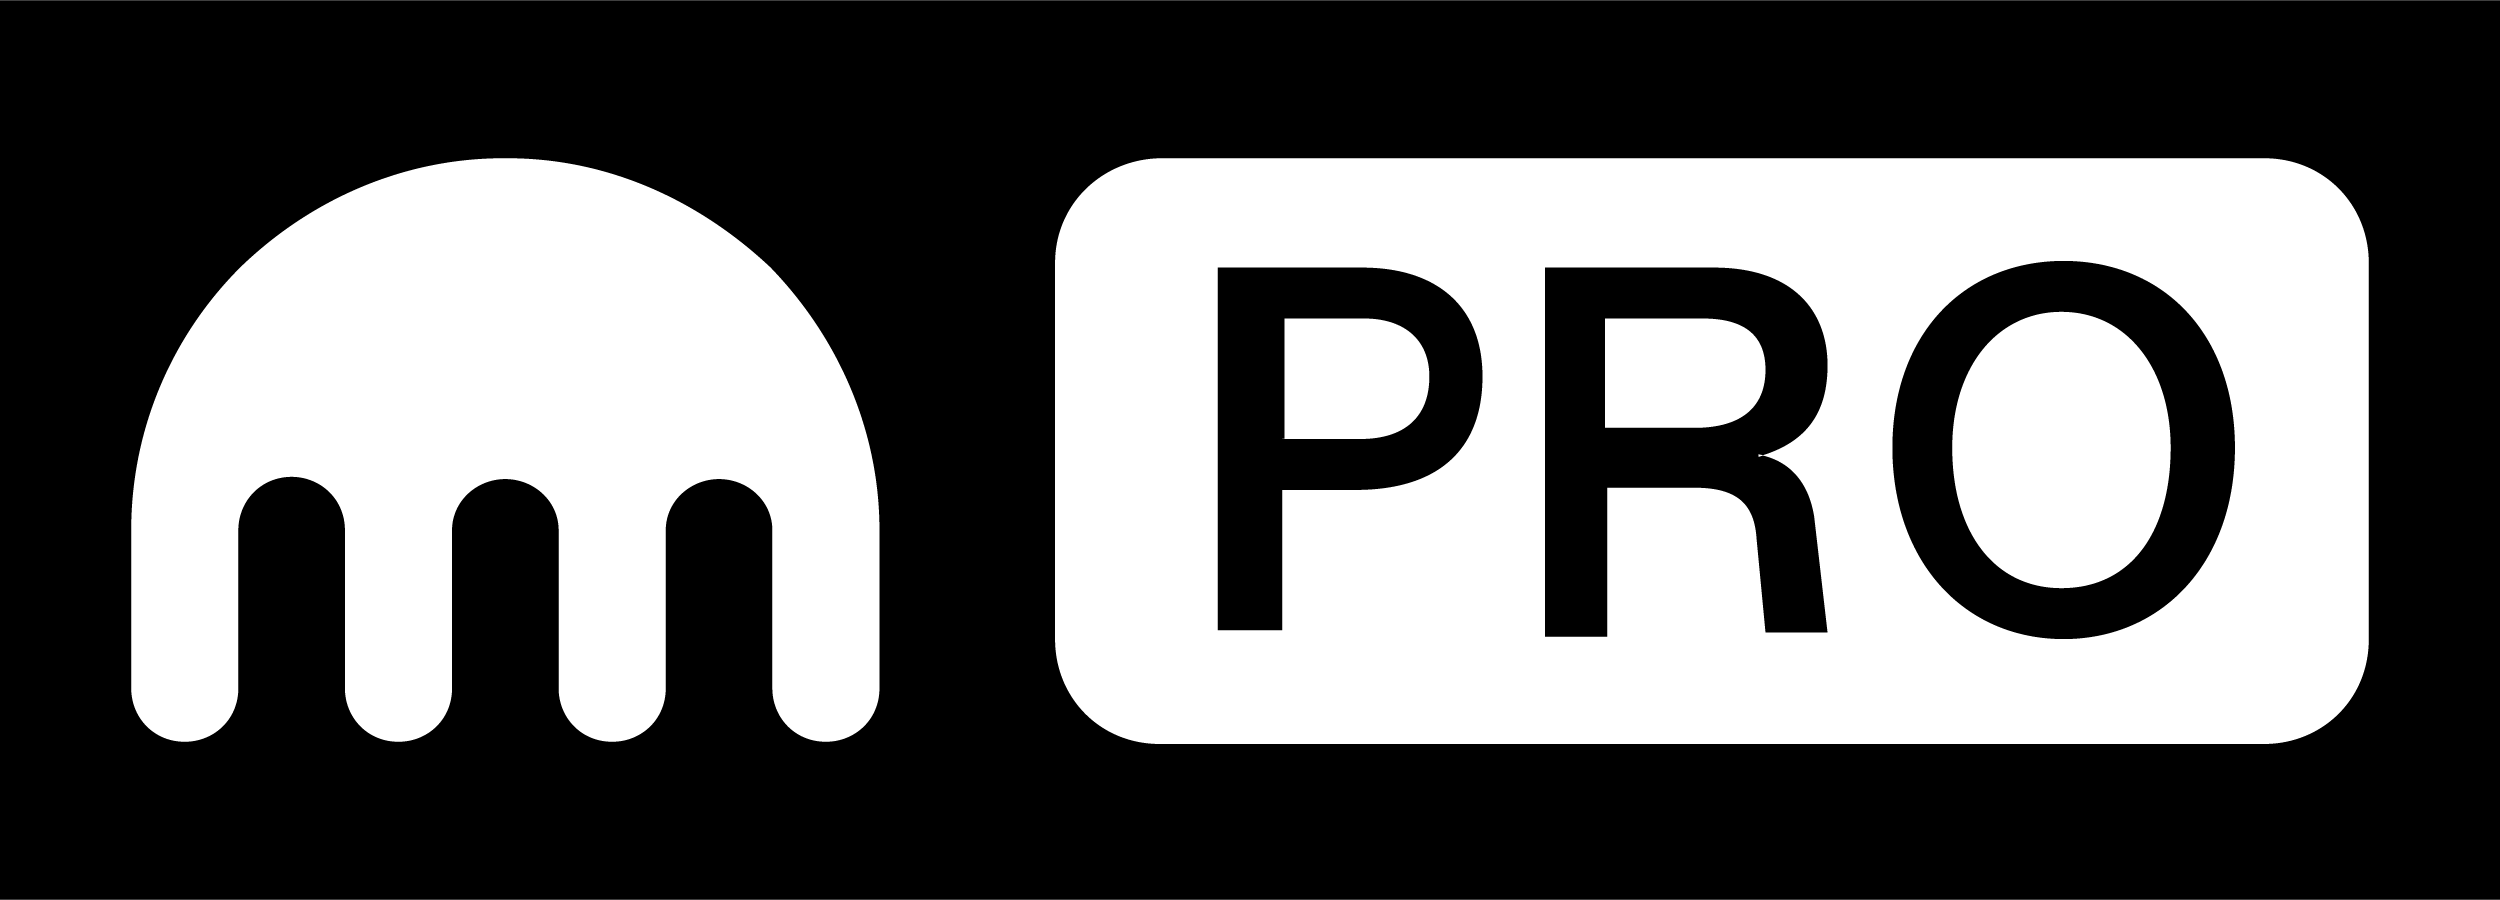 Kraken Pro Logo